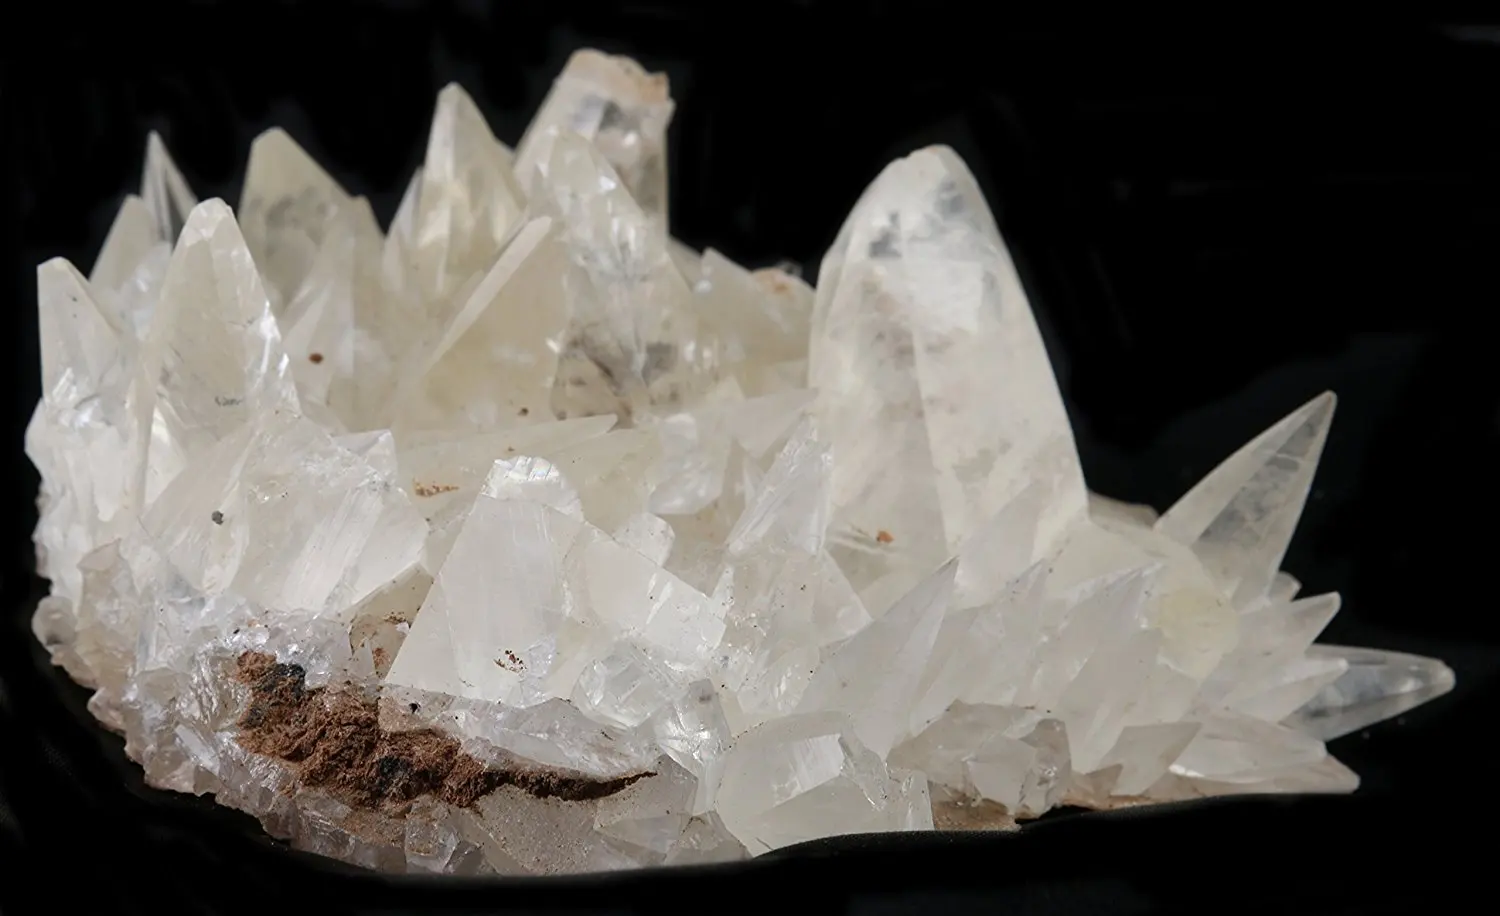 cheap crystals